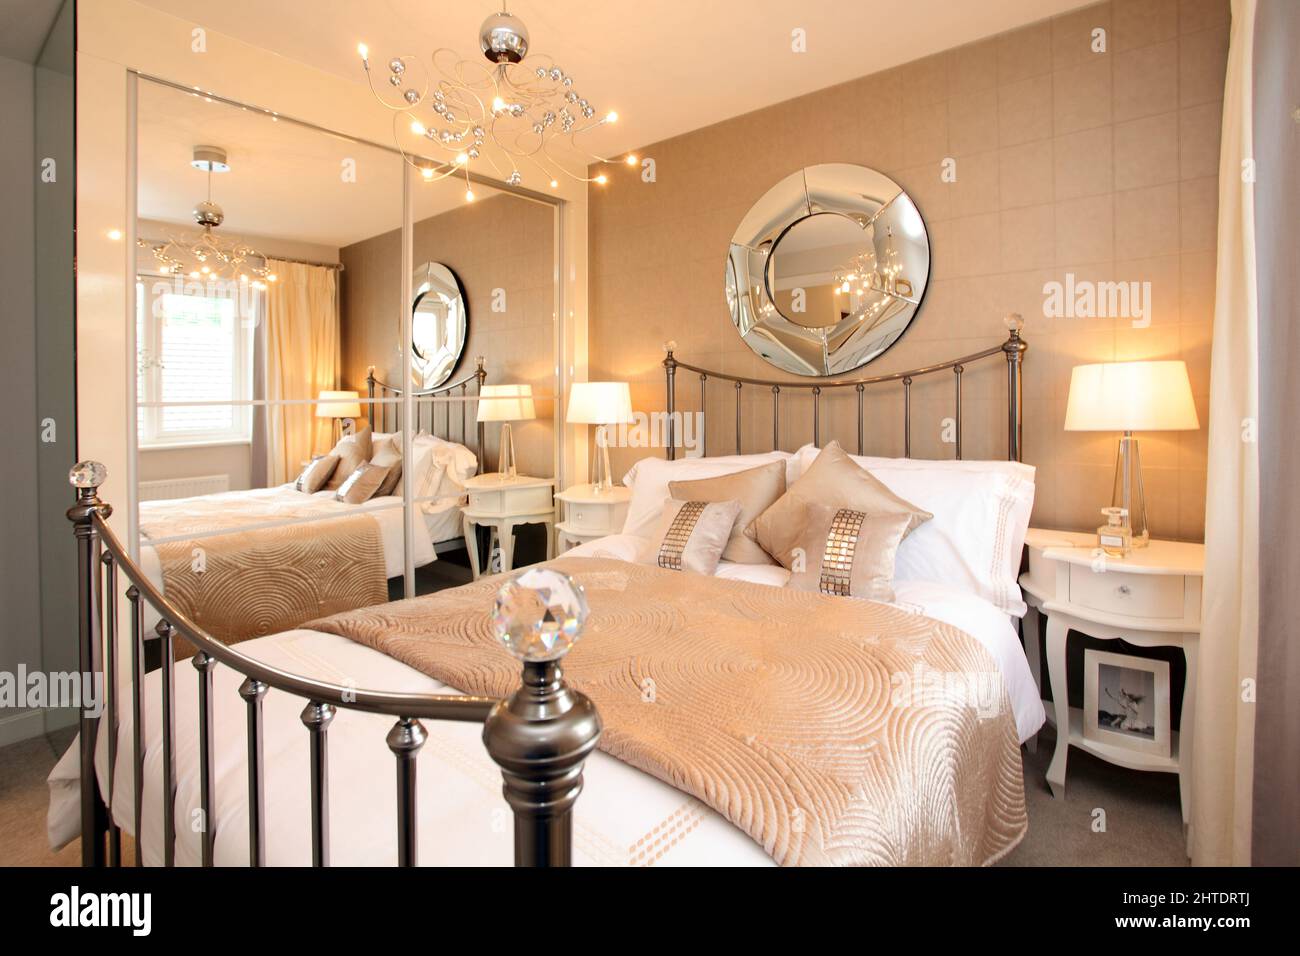 Chambre moderne dans une maison neuve, couvre-lit matelassé, tête de lit en laiton, beige blanc crème couleur neutre Banque D'Images